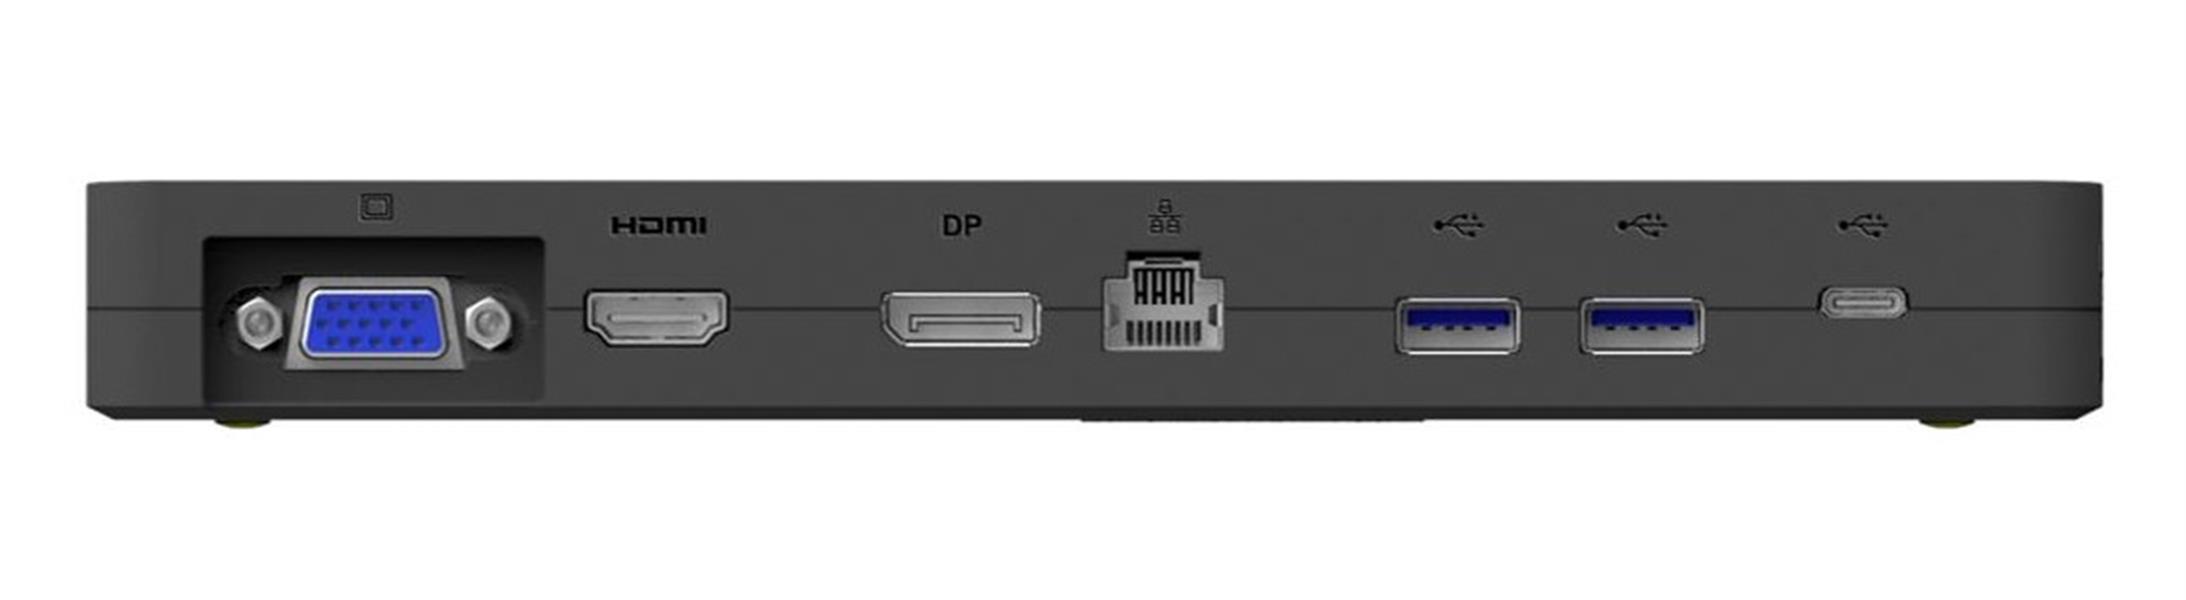 Fujitsu L100 USB Type-C Port Replicator 2 Bedraad USB 3.2 Gen 1 (3.1 Gen 1) Type-C Zwart